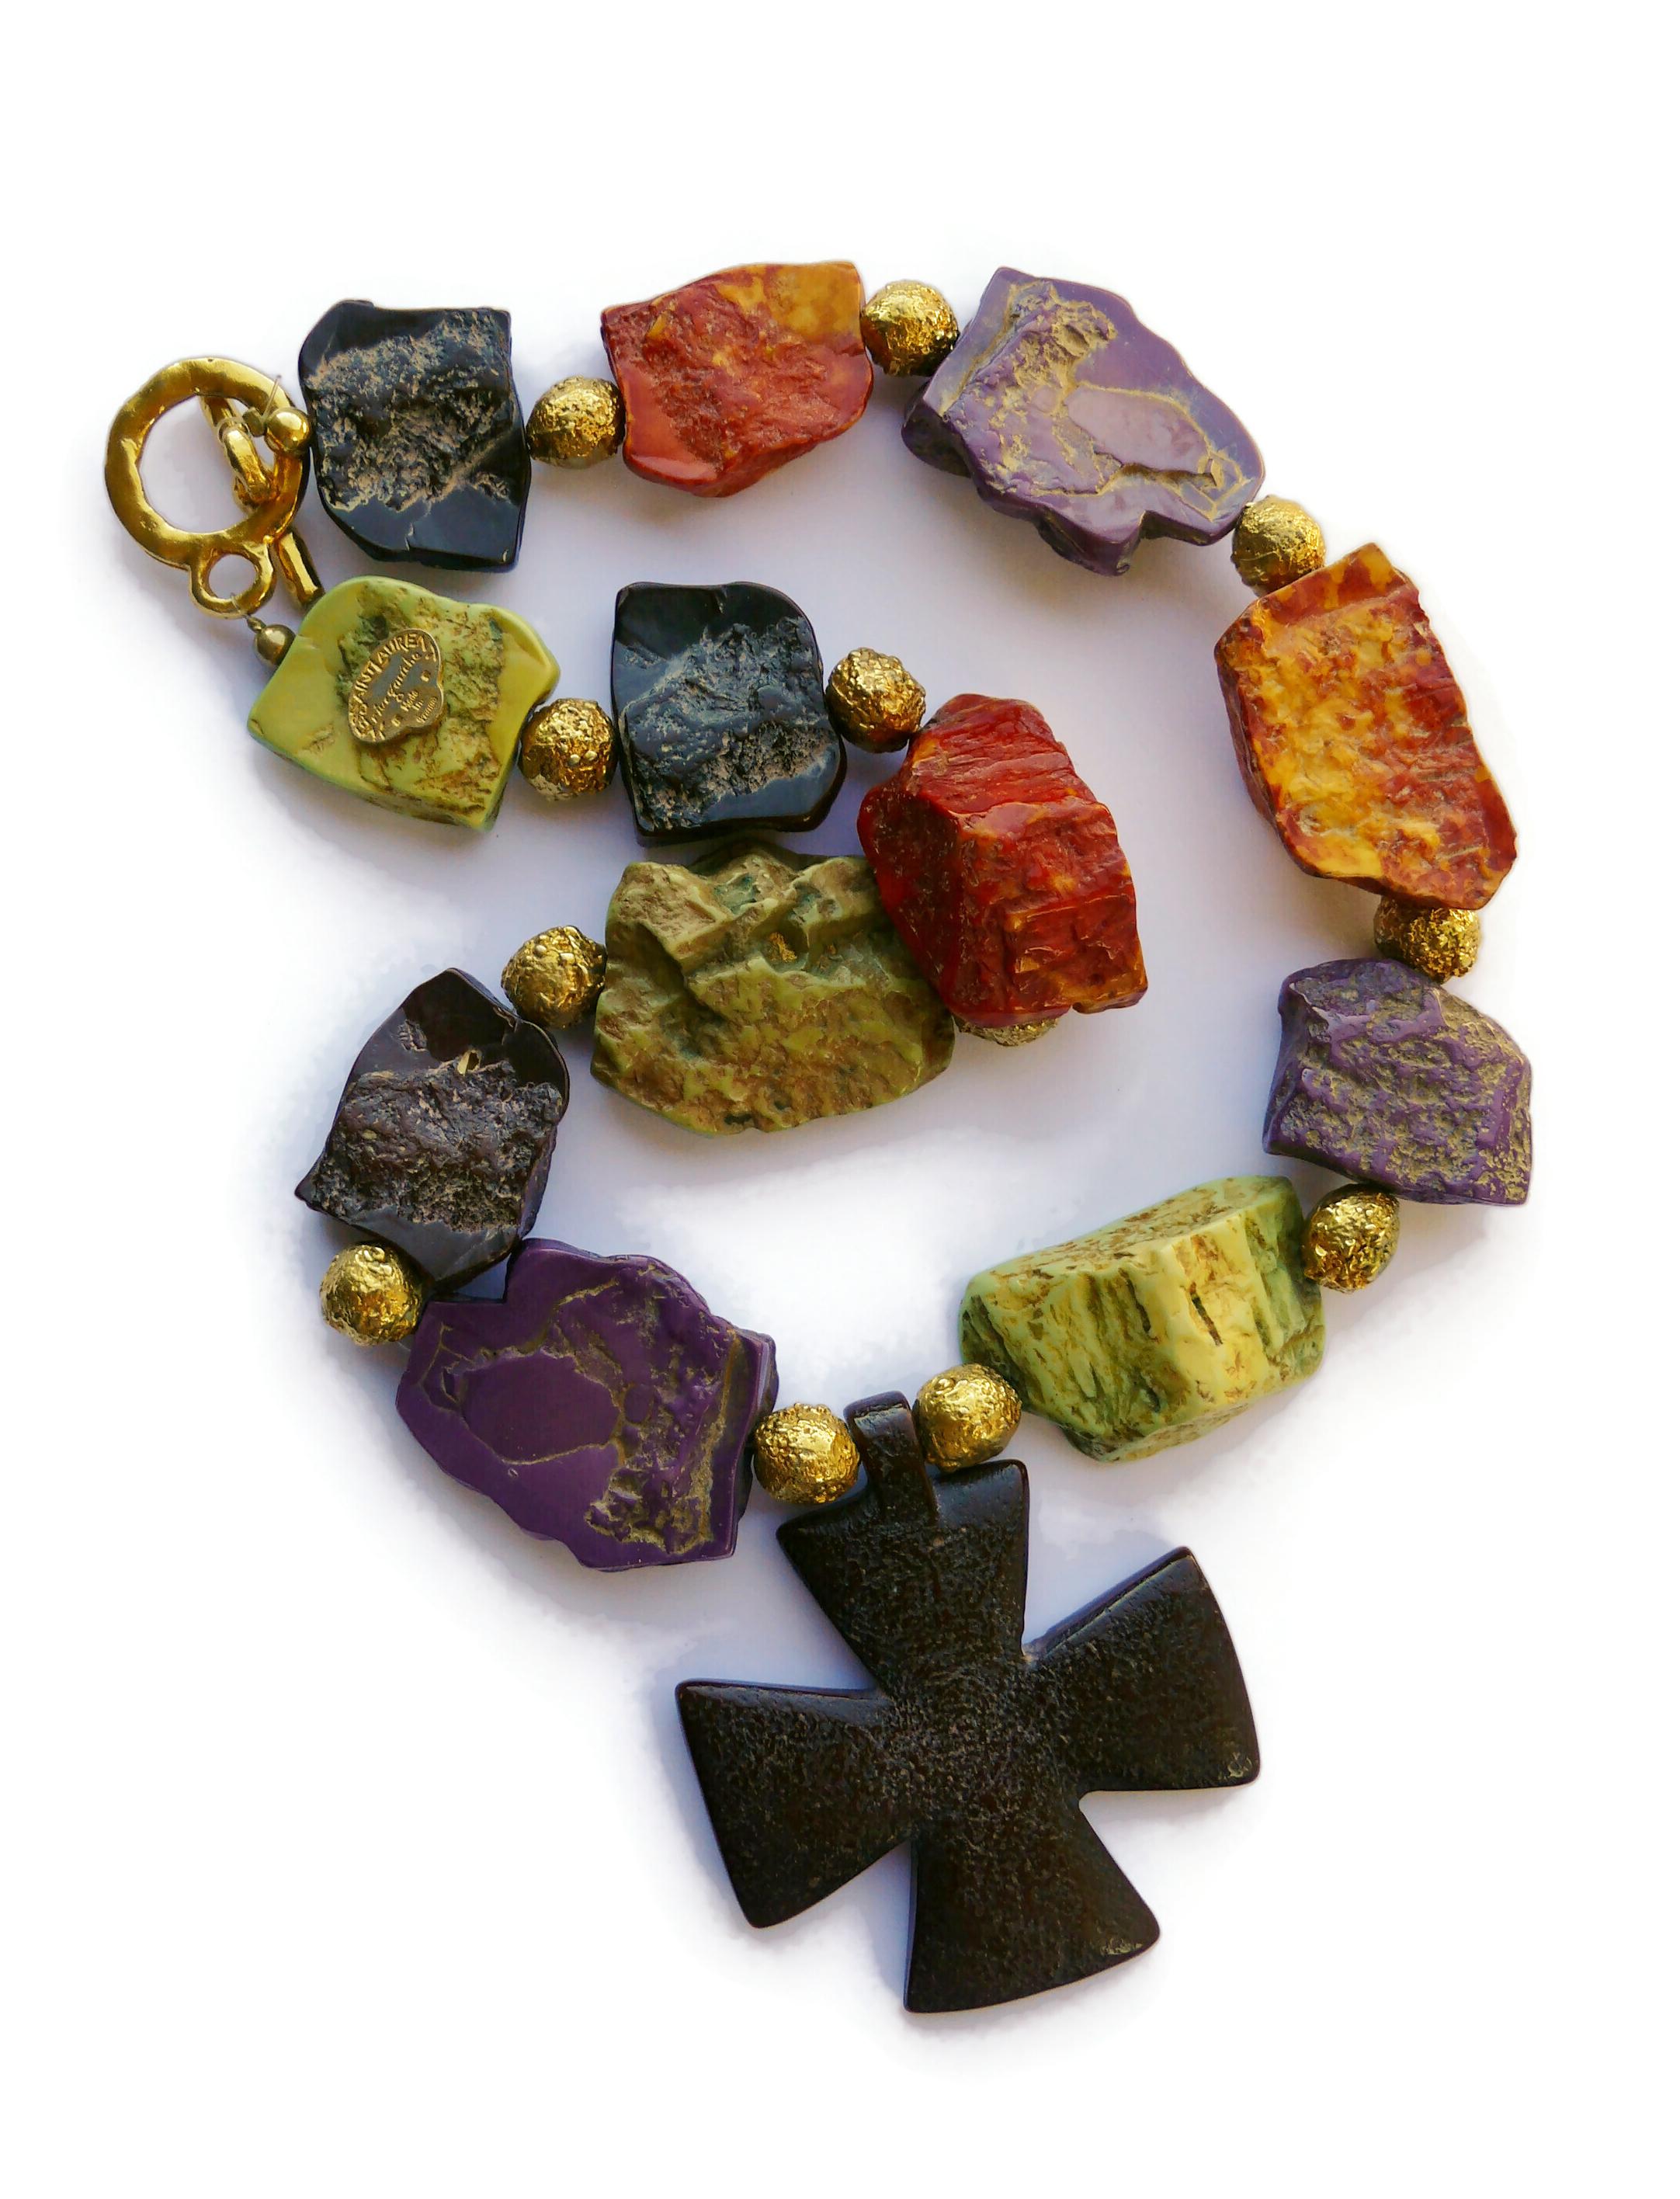 YVES SAINT LAURENT YSL Rive Gauche Vintage Faux Stones Cross Pendant Necklace For Sale 5